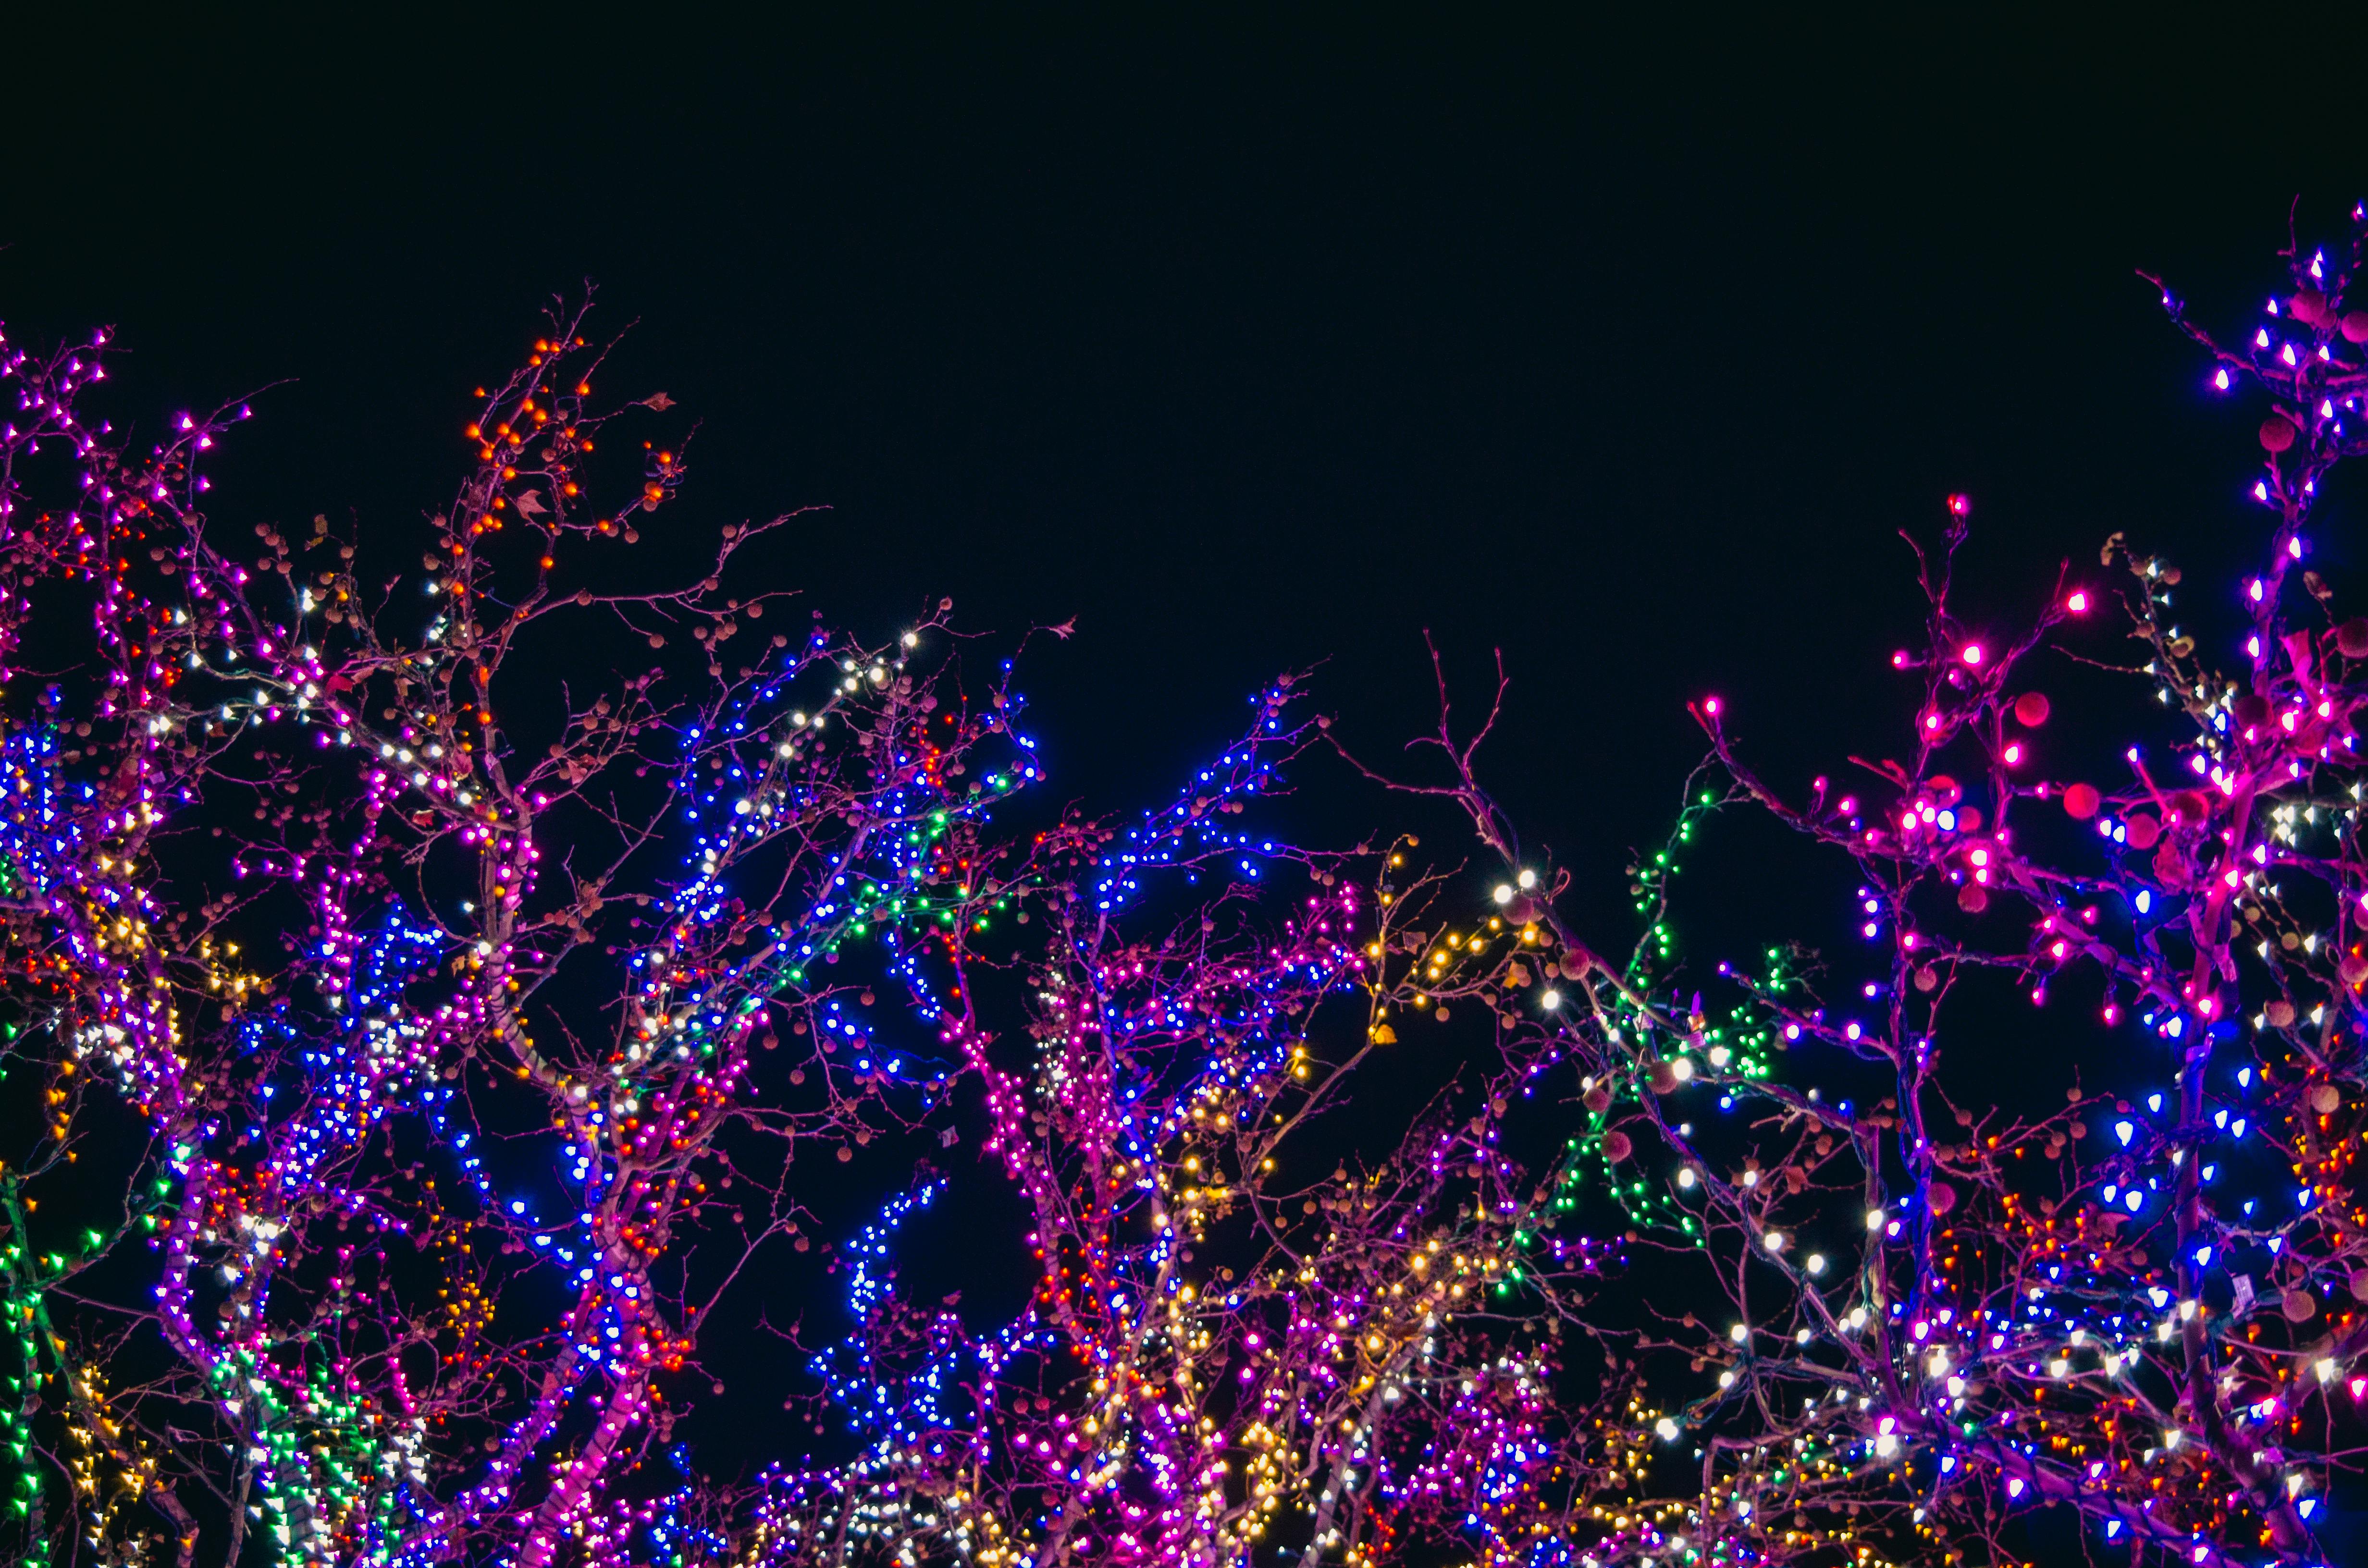 Hình ảnh các bóng đèn mừng Giáng sinh được trang trí đẹp mắt sẽ khiến bạn không thể rời mắt. Hãy đến xem từng chi tiết được cẩn thận chăm chút, thể hiện vẻ đẹp tráng lệ và rực rỡ của Giáng sinh.